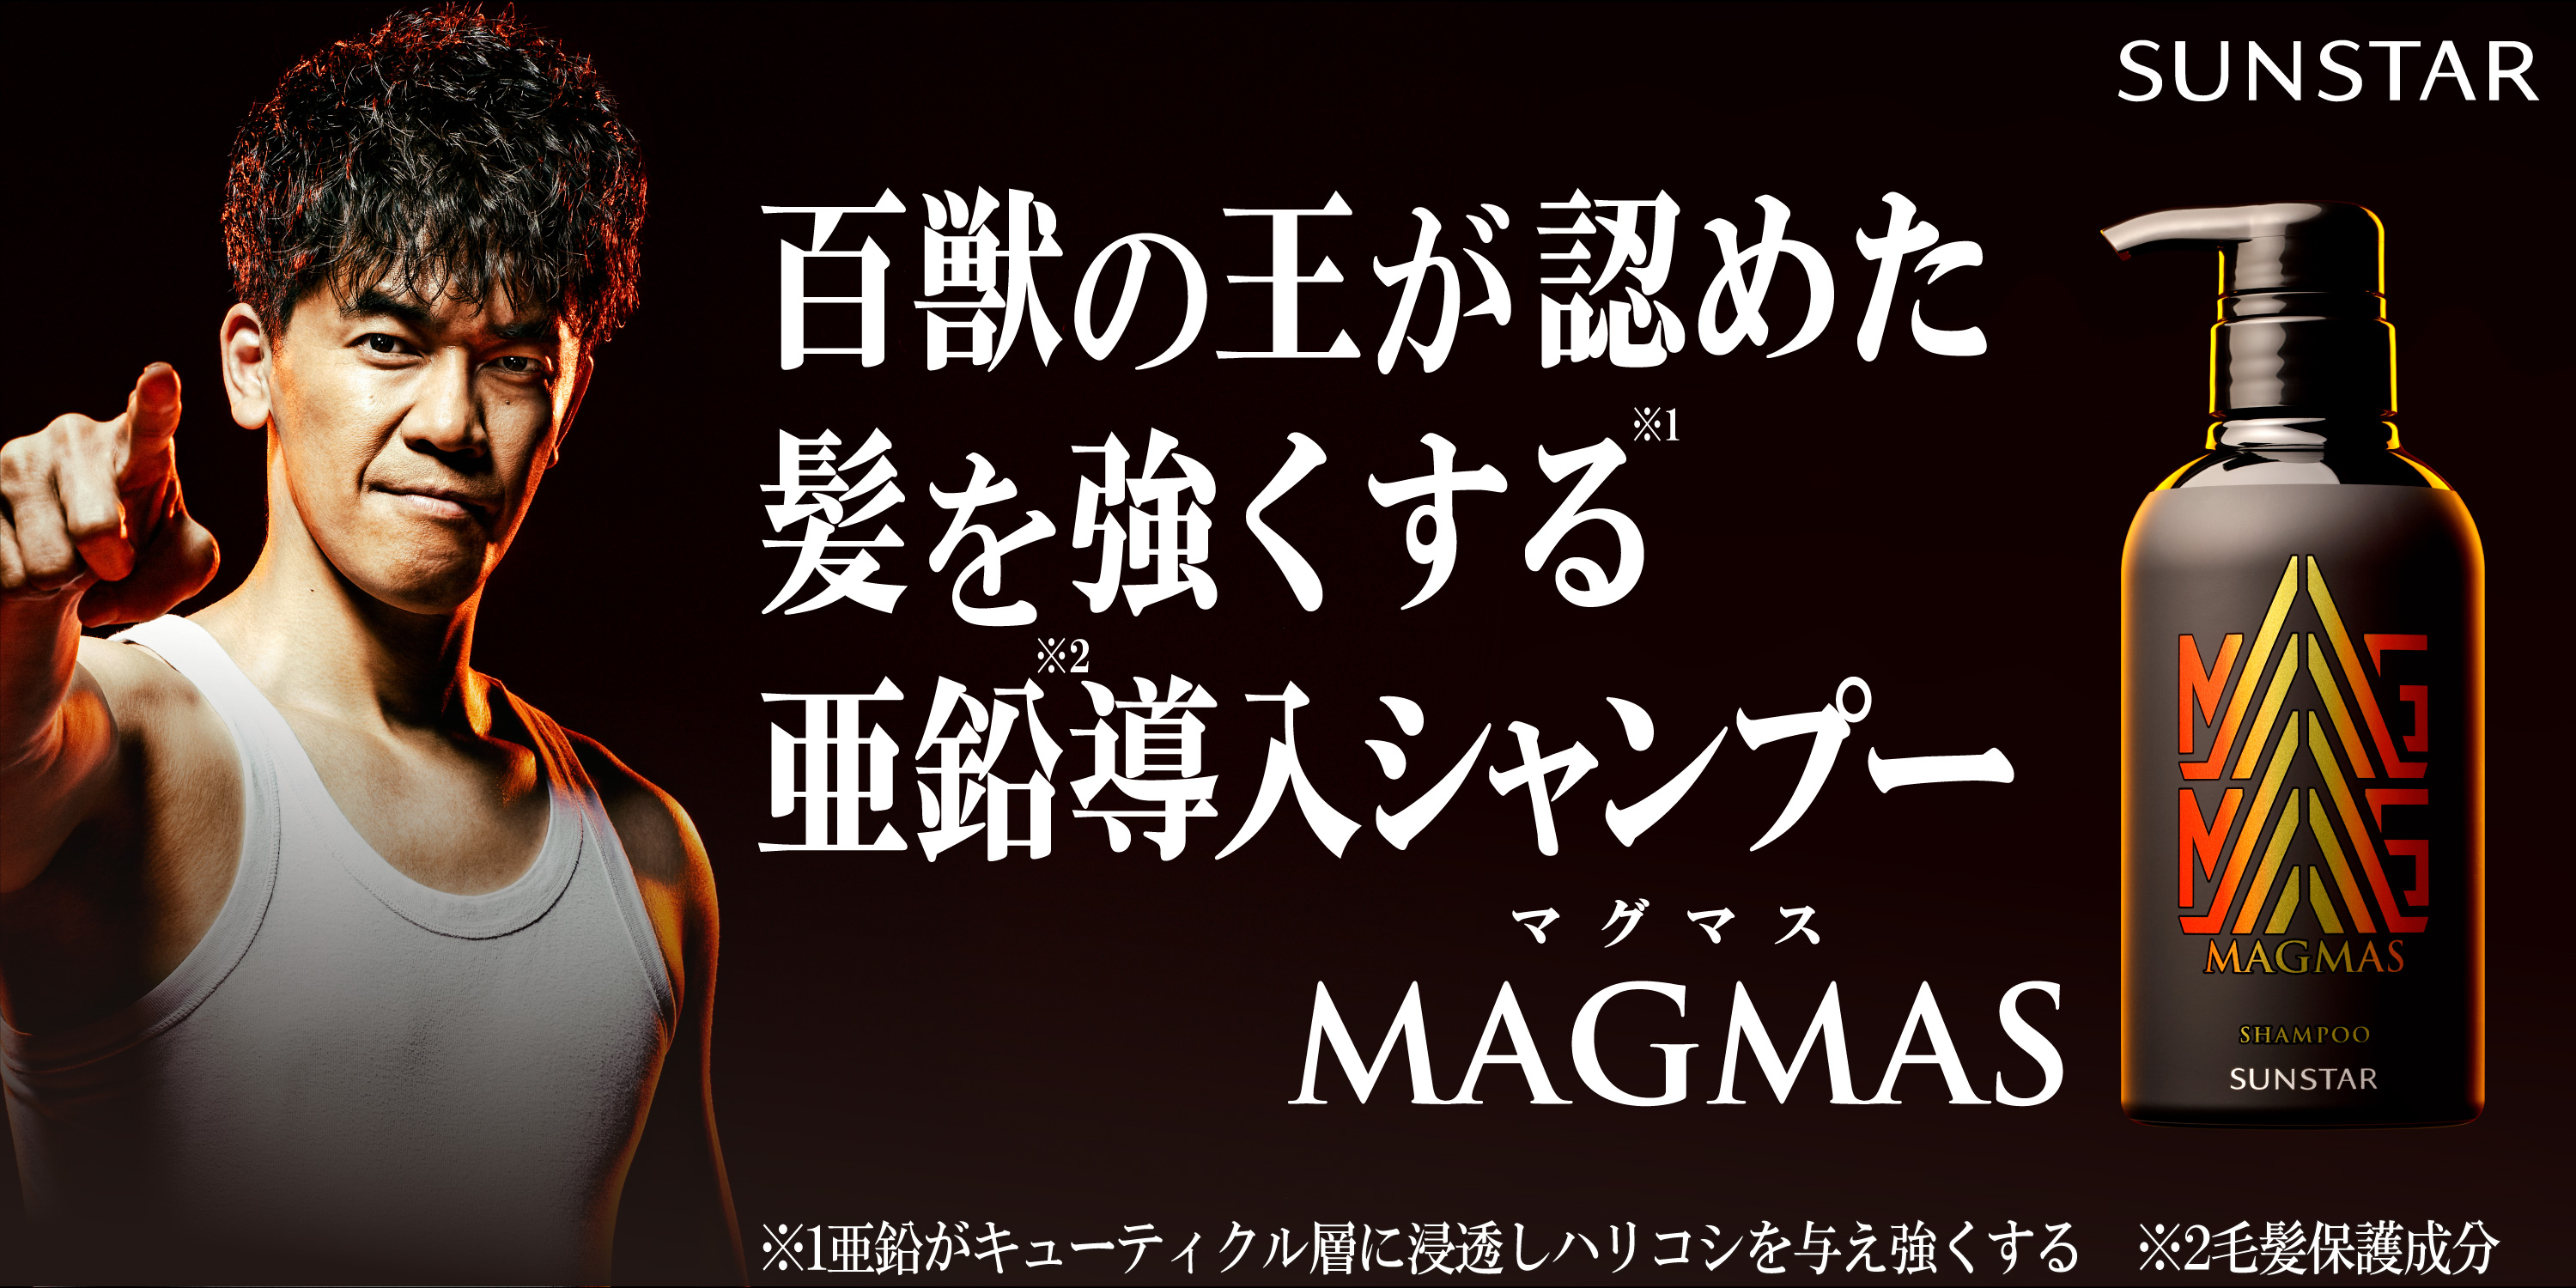 武井壮 Magmasアンバサダーに就任 百獣の王が認めた髪を強くする亜鉛導入シャンプー Magmas Web動画第一弾を10月16日より公開開始 Newscast